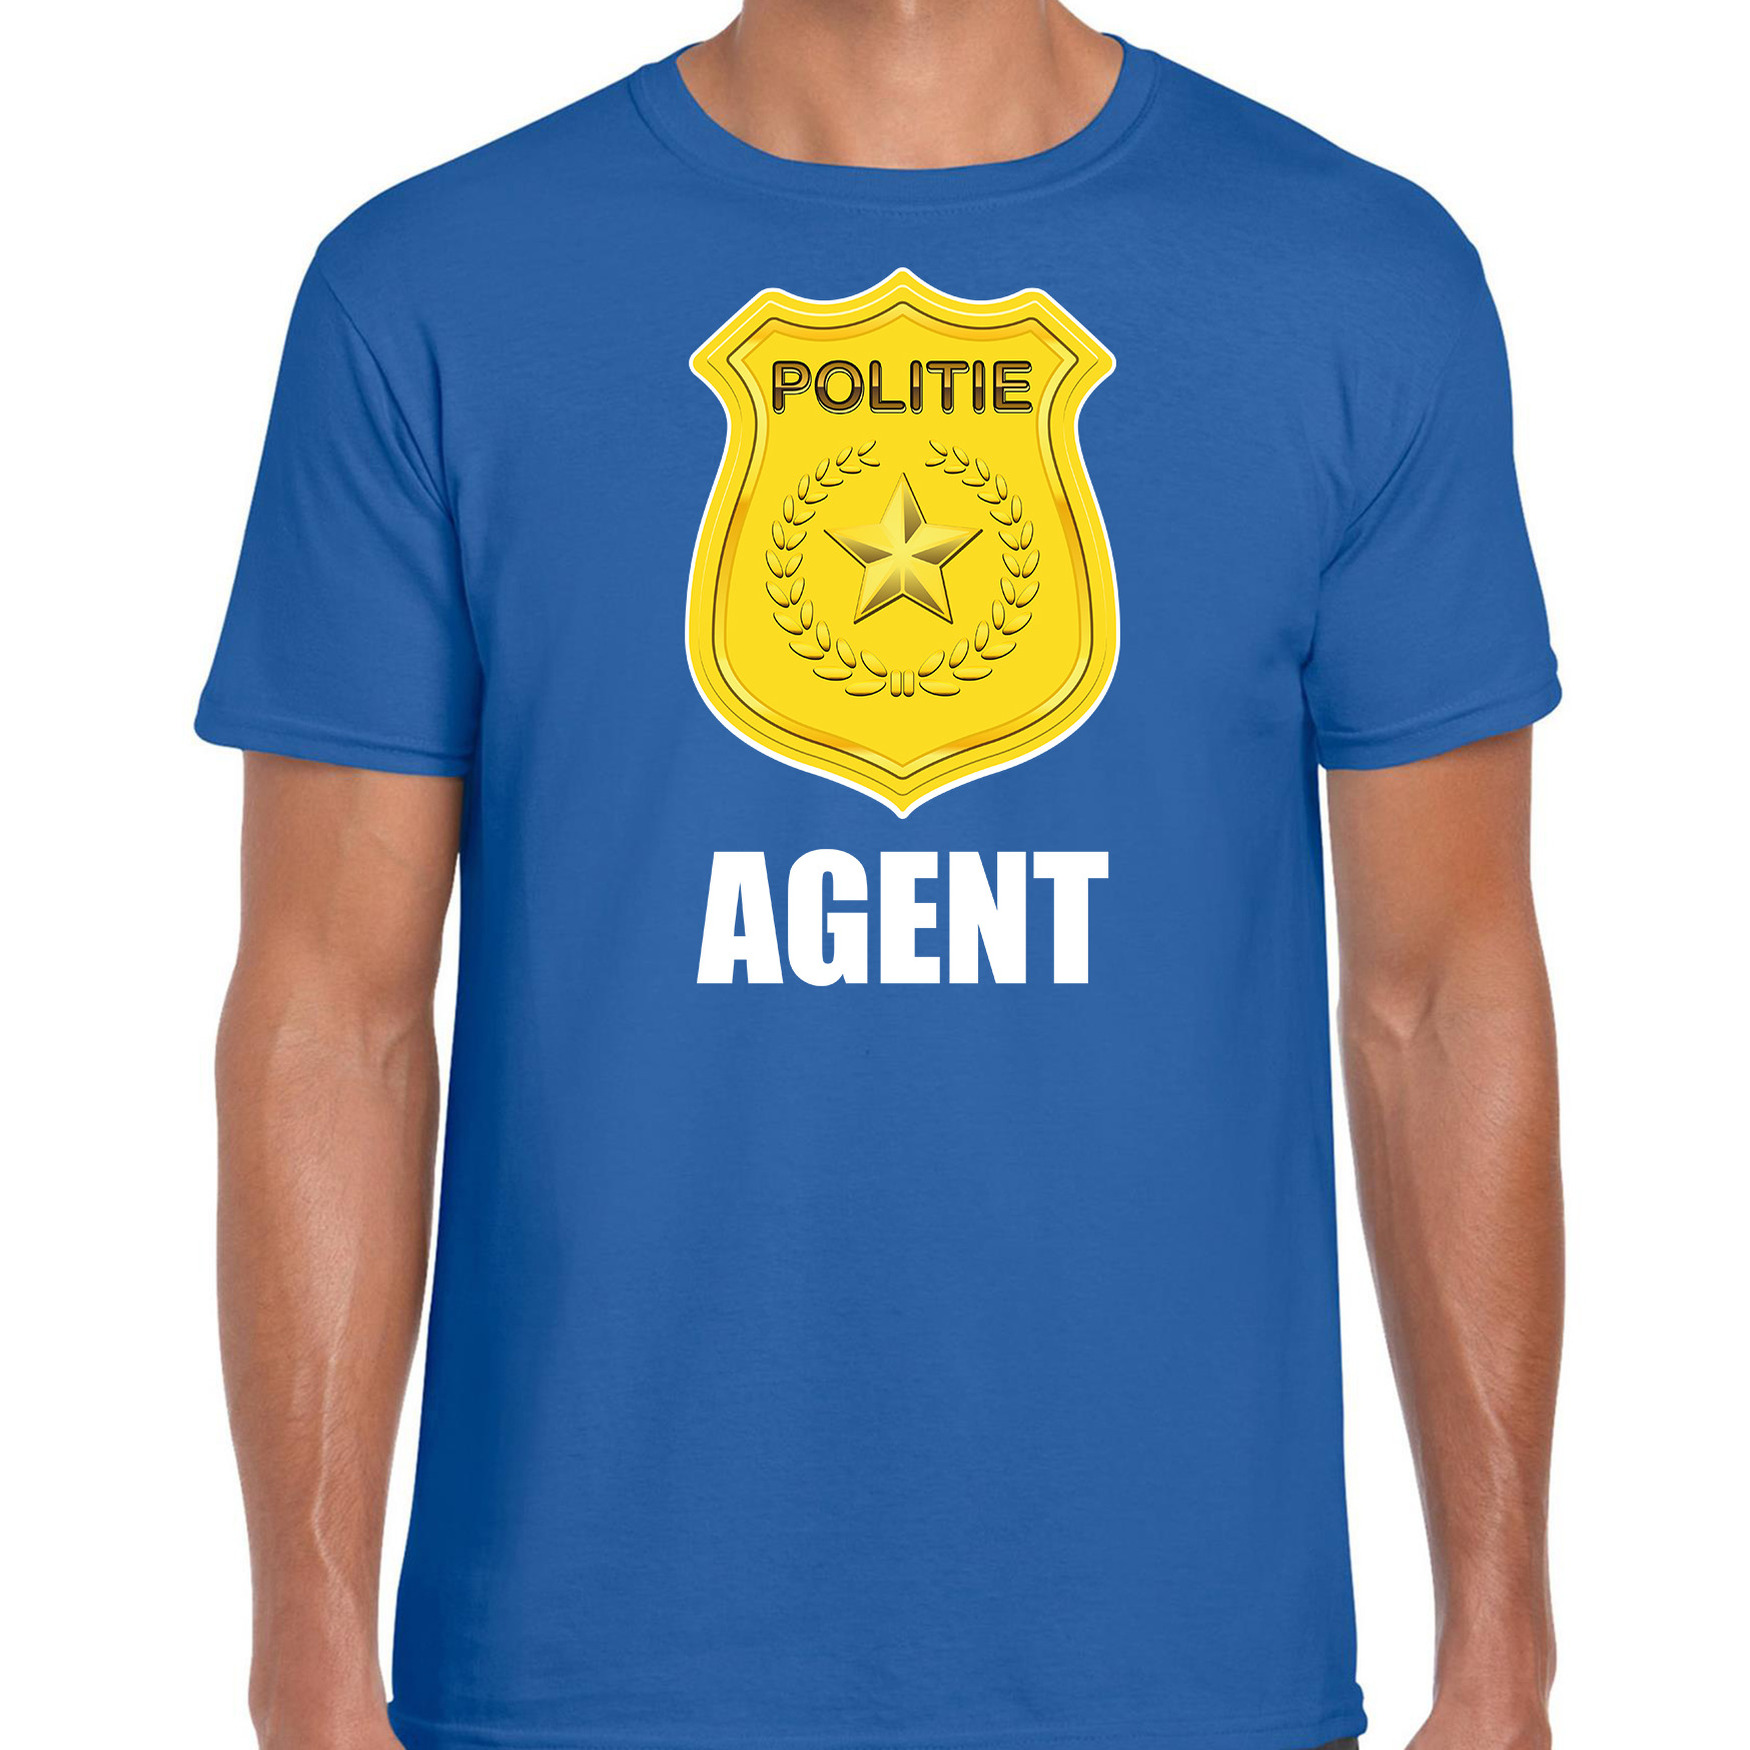 Agent politie embleem carnaval t-shirt blauw voor heren